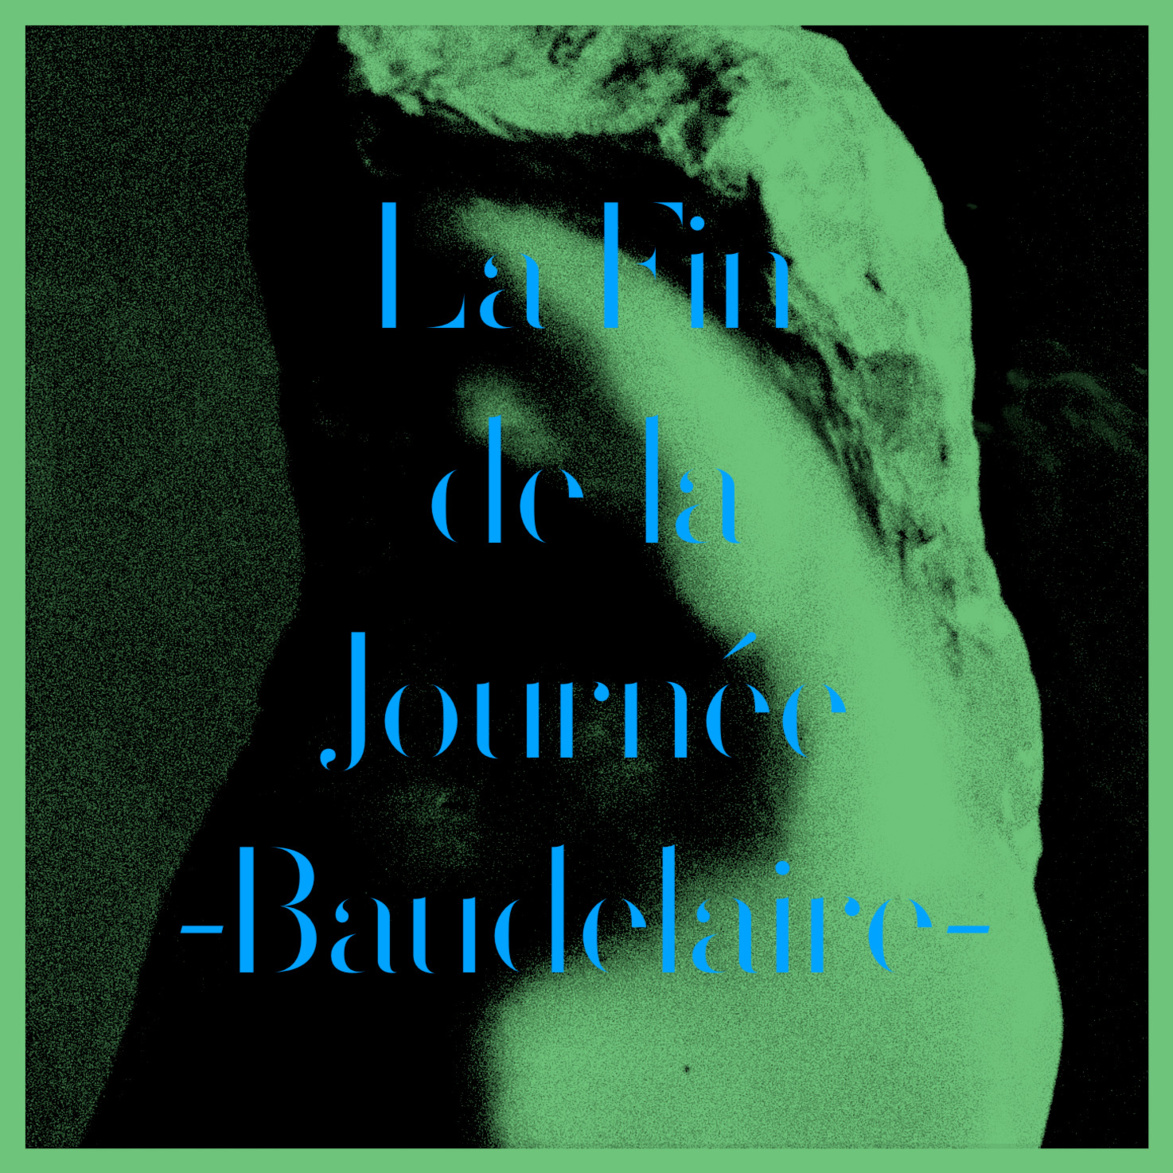 Louis Arlette chante un poème de Baudelaire, la Fin de la Journée